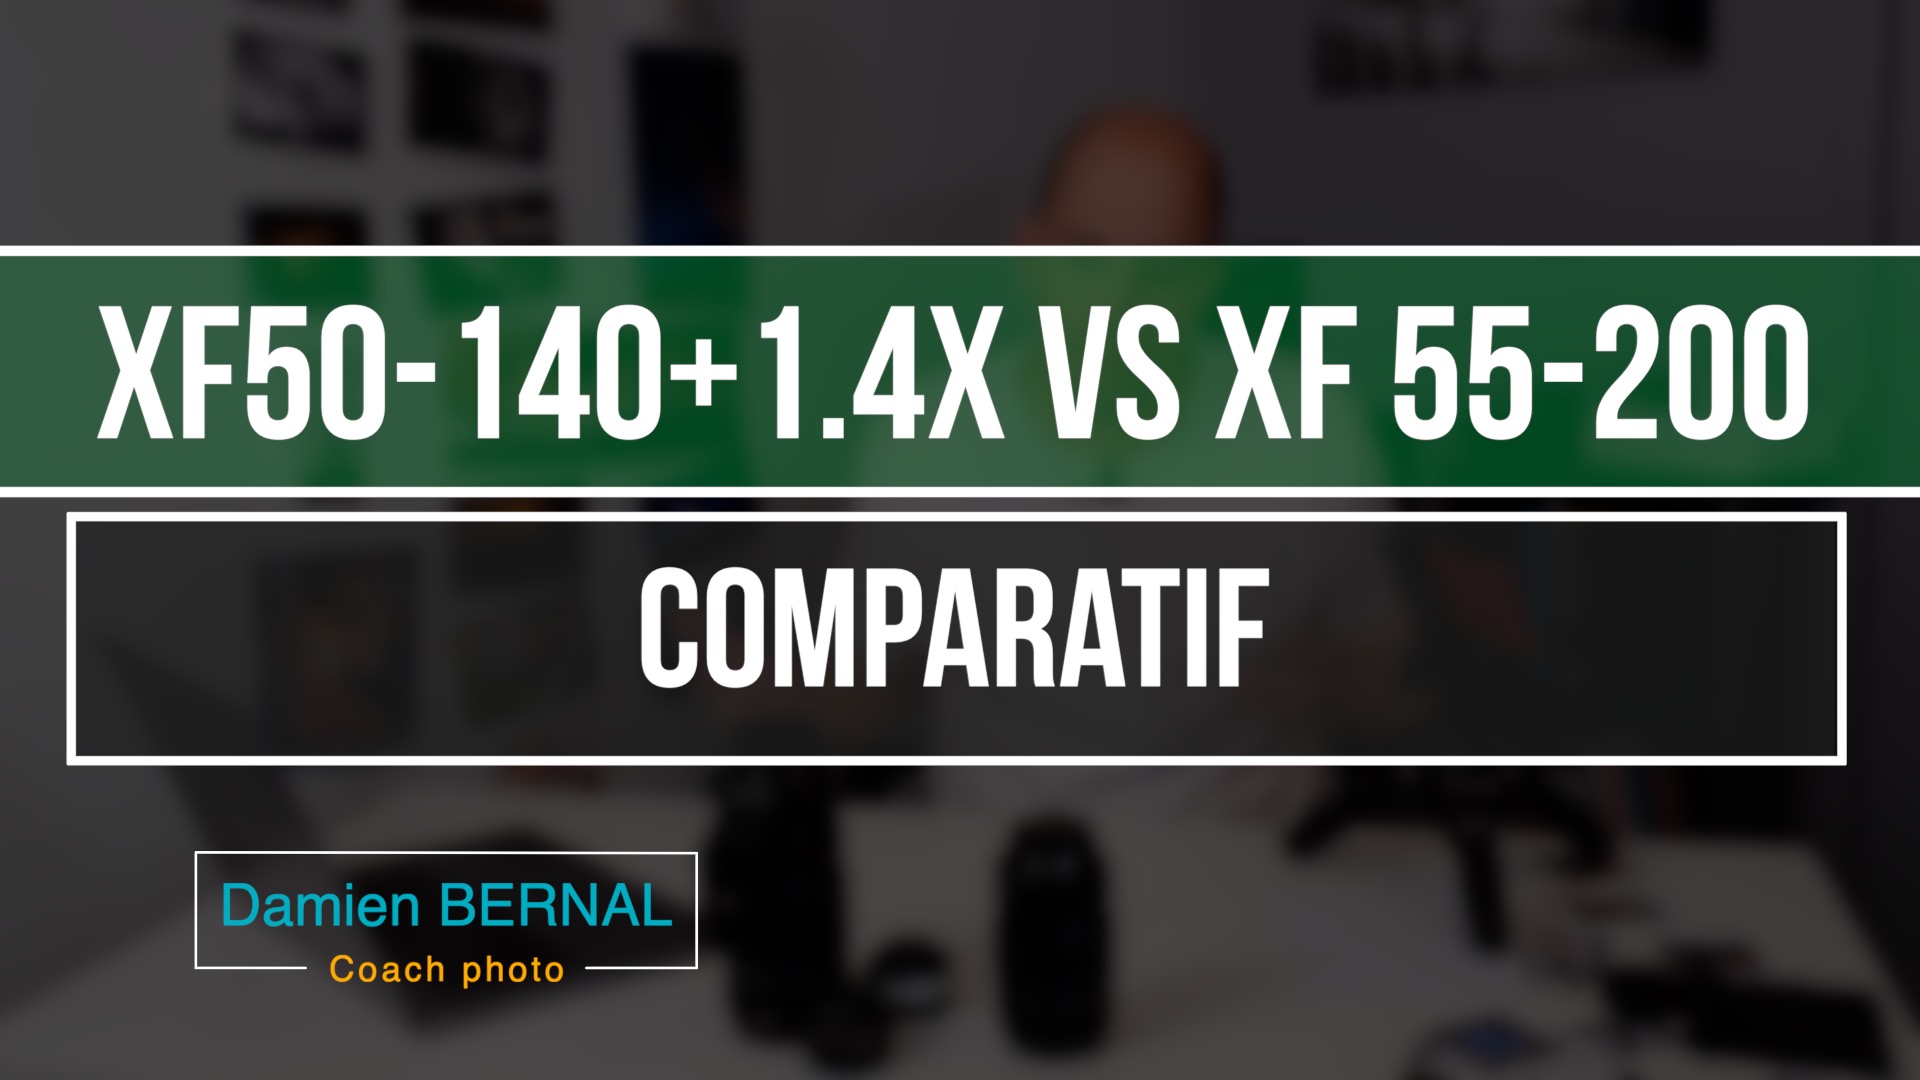 393 - Comparatif XF55-200 XF50-140